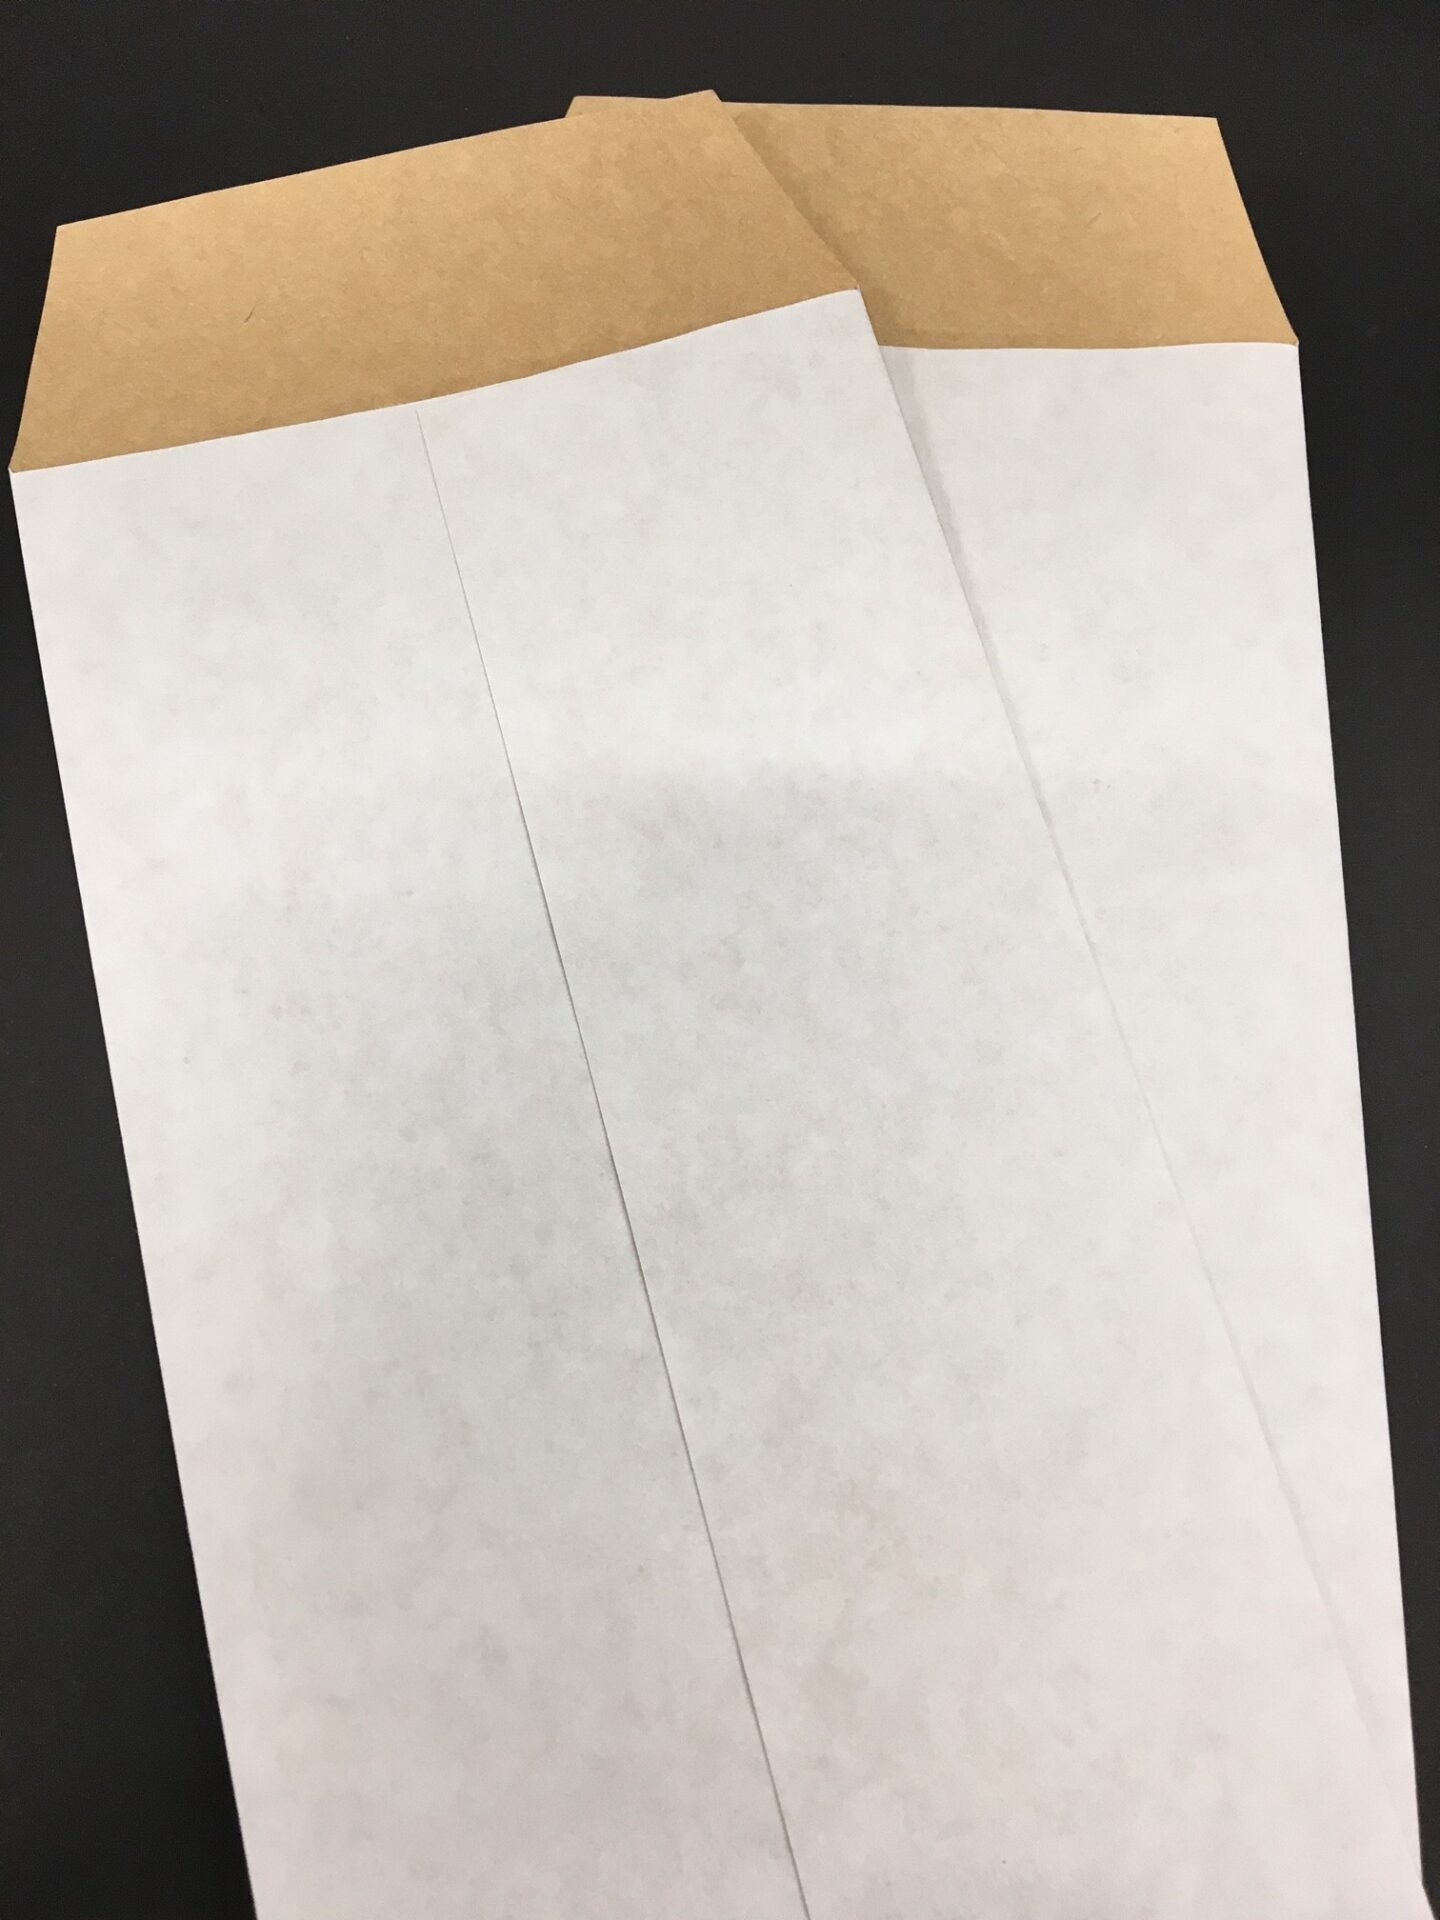 ホワイトクラフト紙での封筒 封筒作成 封筒印刷 封筒屋どっとこむ よもやま話